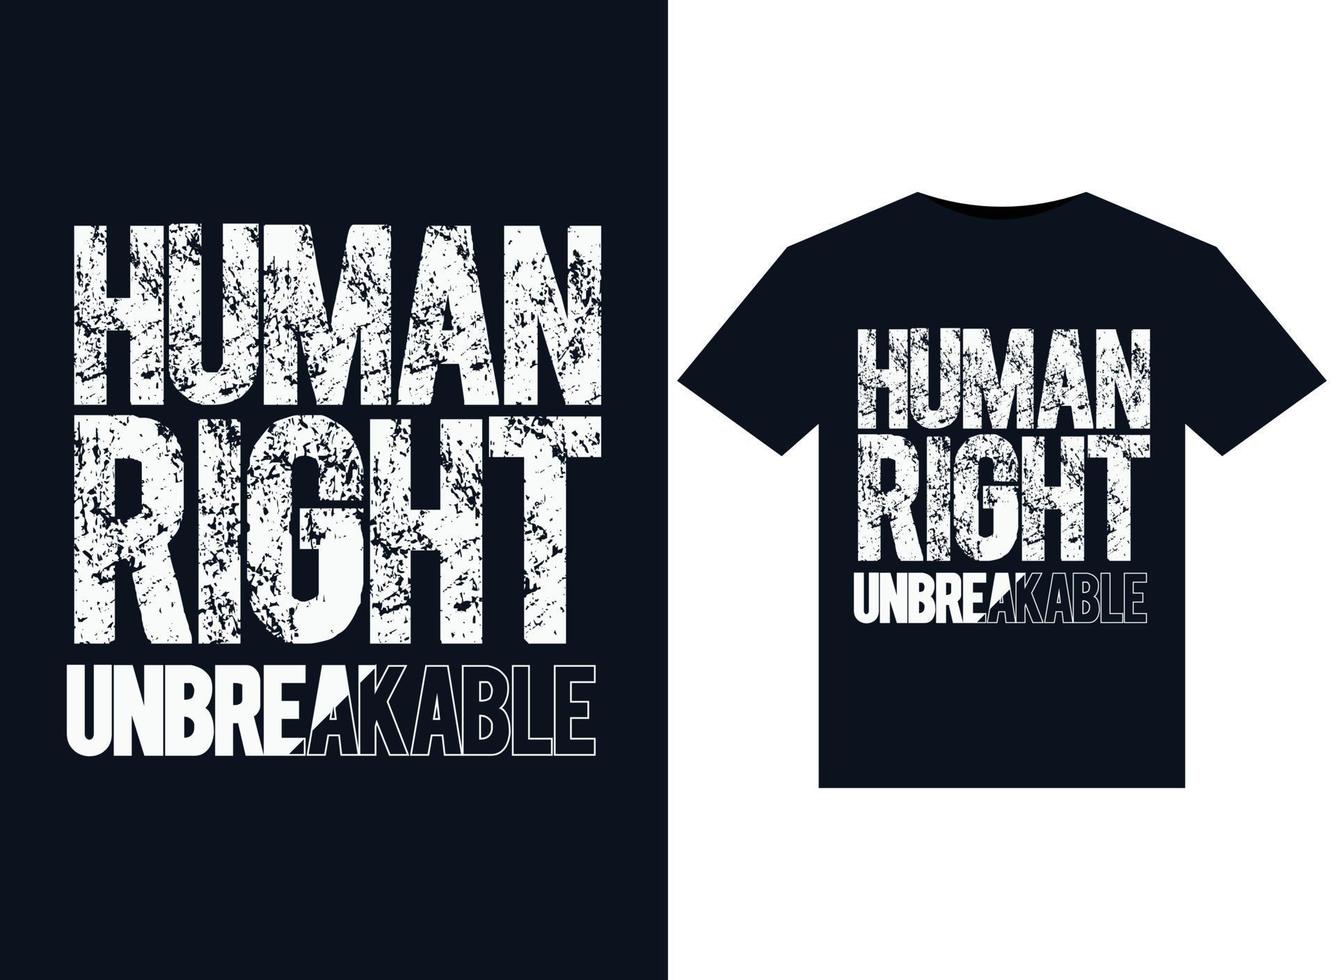 ilustrações inquebráveis de direitos humanos para design de camisetas prontas para impressão vetor